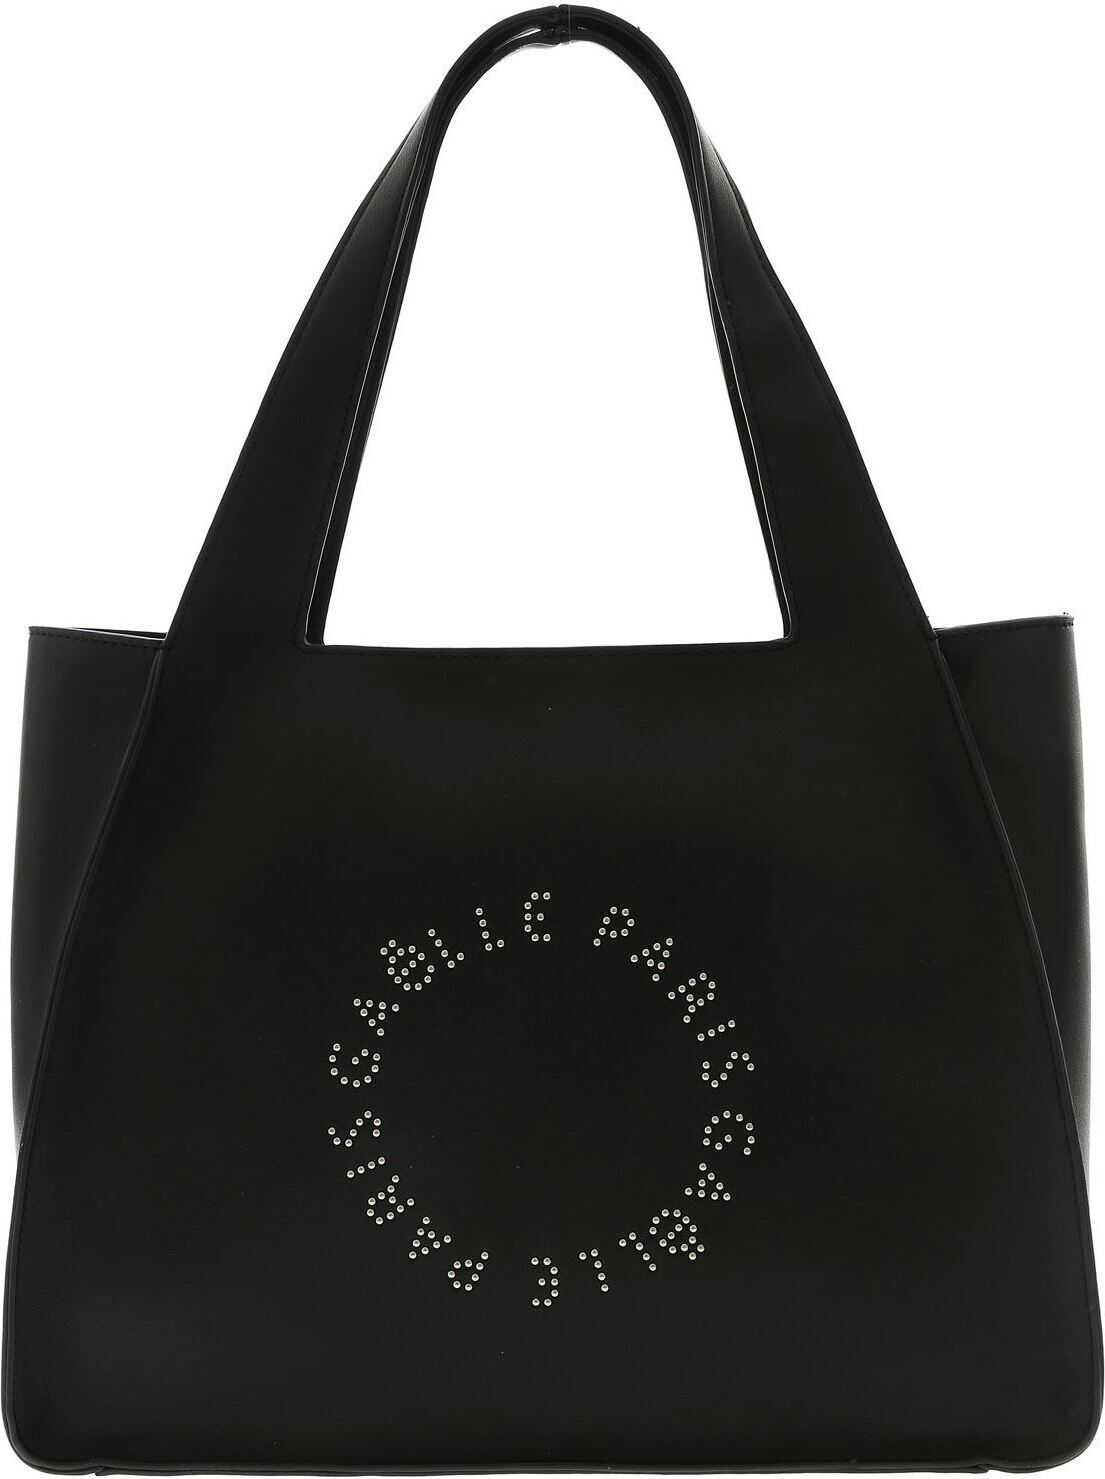 GAëLLE Paris Studded Logo Bag In Black Black